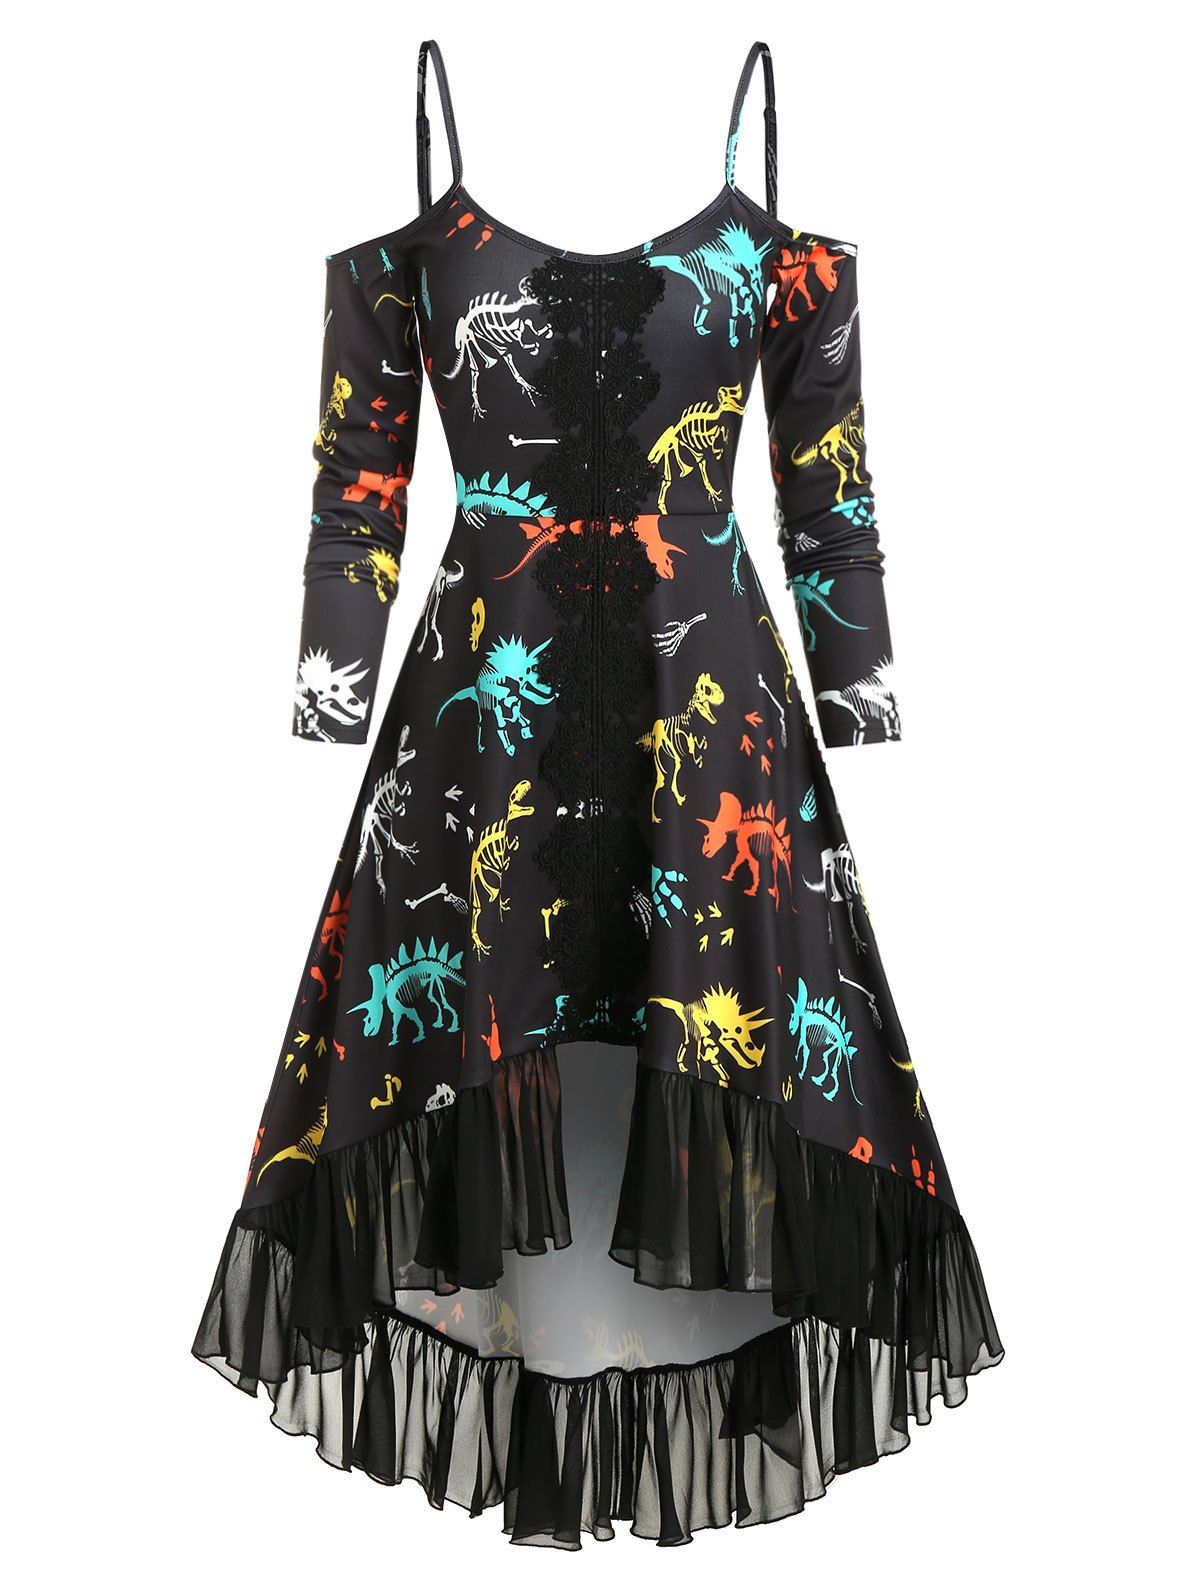 Vintage Gothic Dinosaur Dress Print Cutout Cold Shoulder High Low Chiffon Flounce Guipure Lace Insert Dress - BLACK M